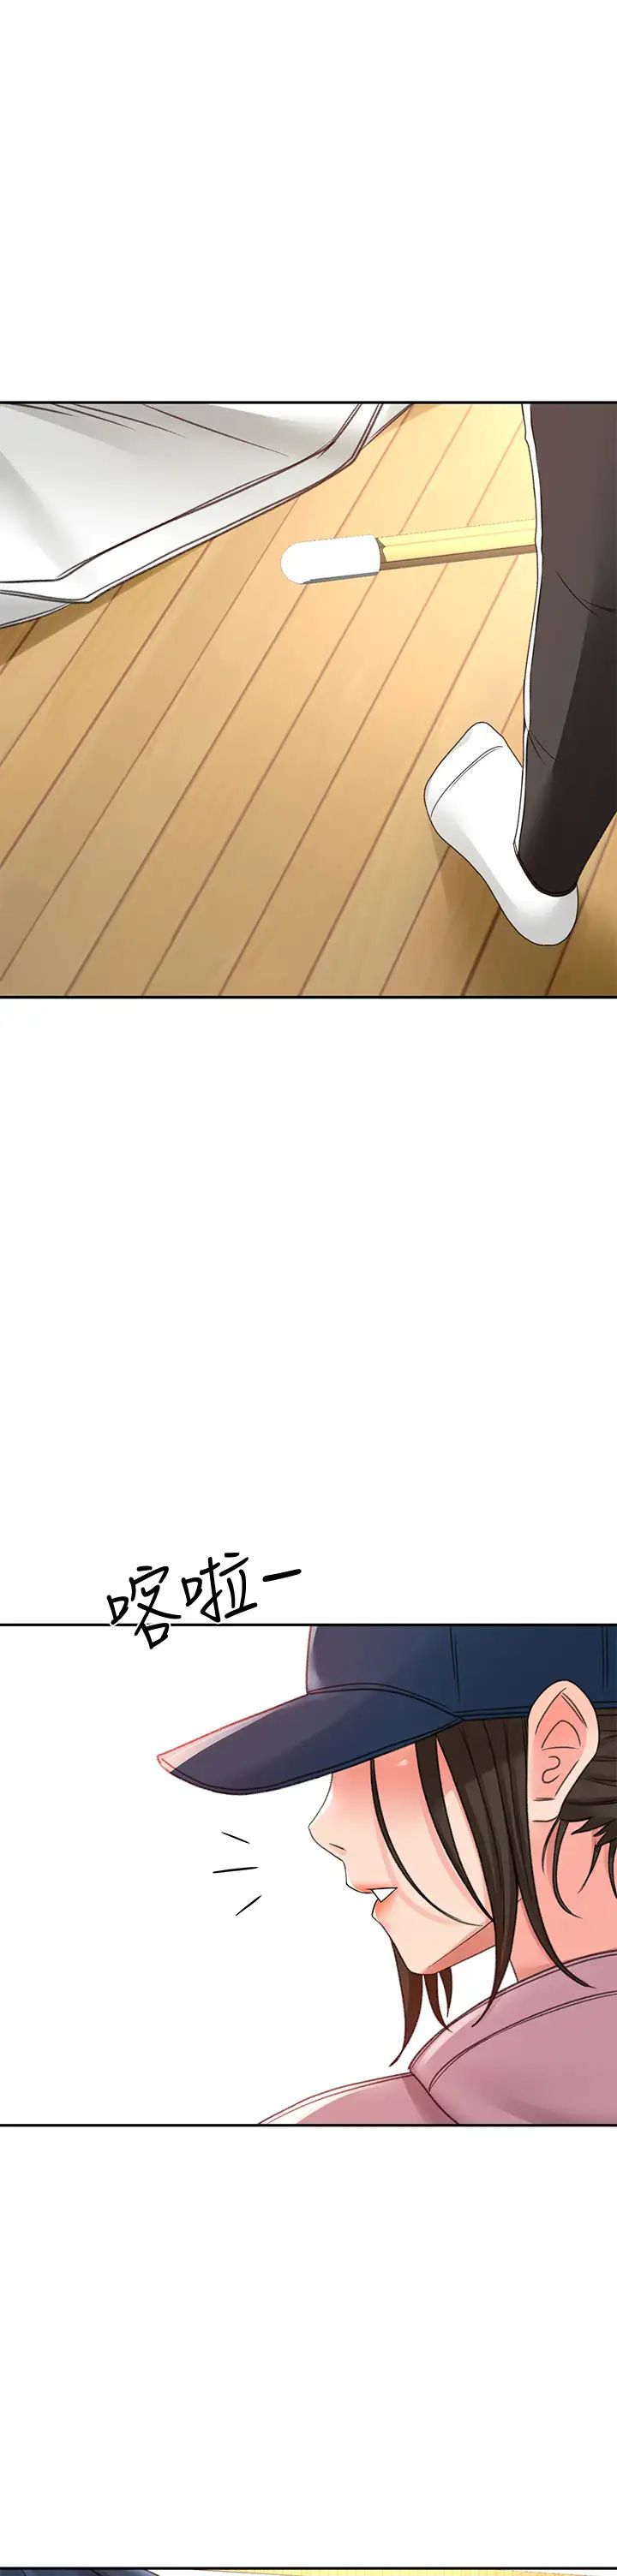 韩国污漫画 劍道學姐 第29话 逸菲姐令人疯狂的嫩穴 37